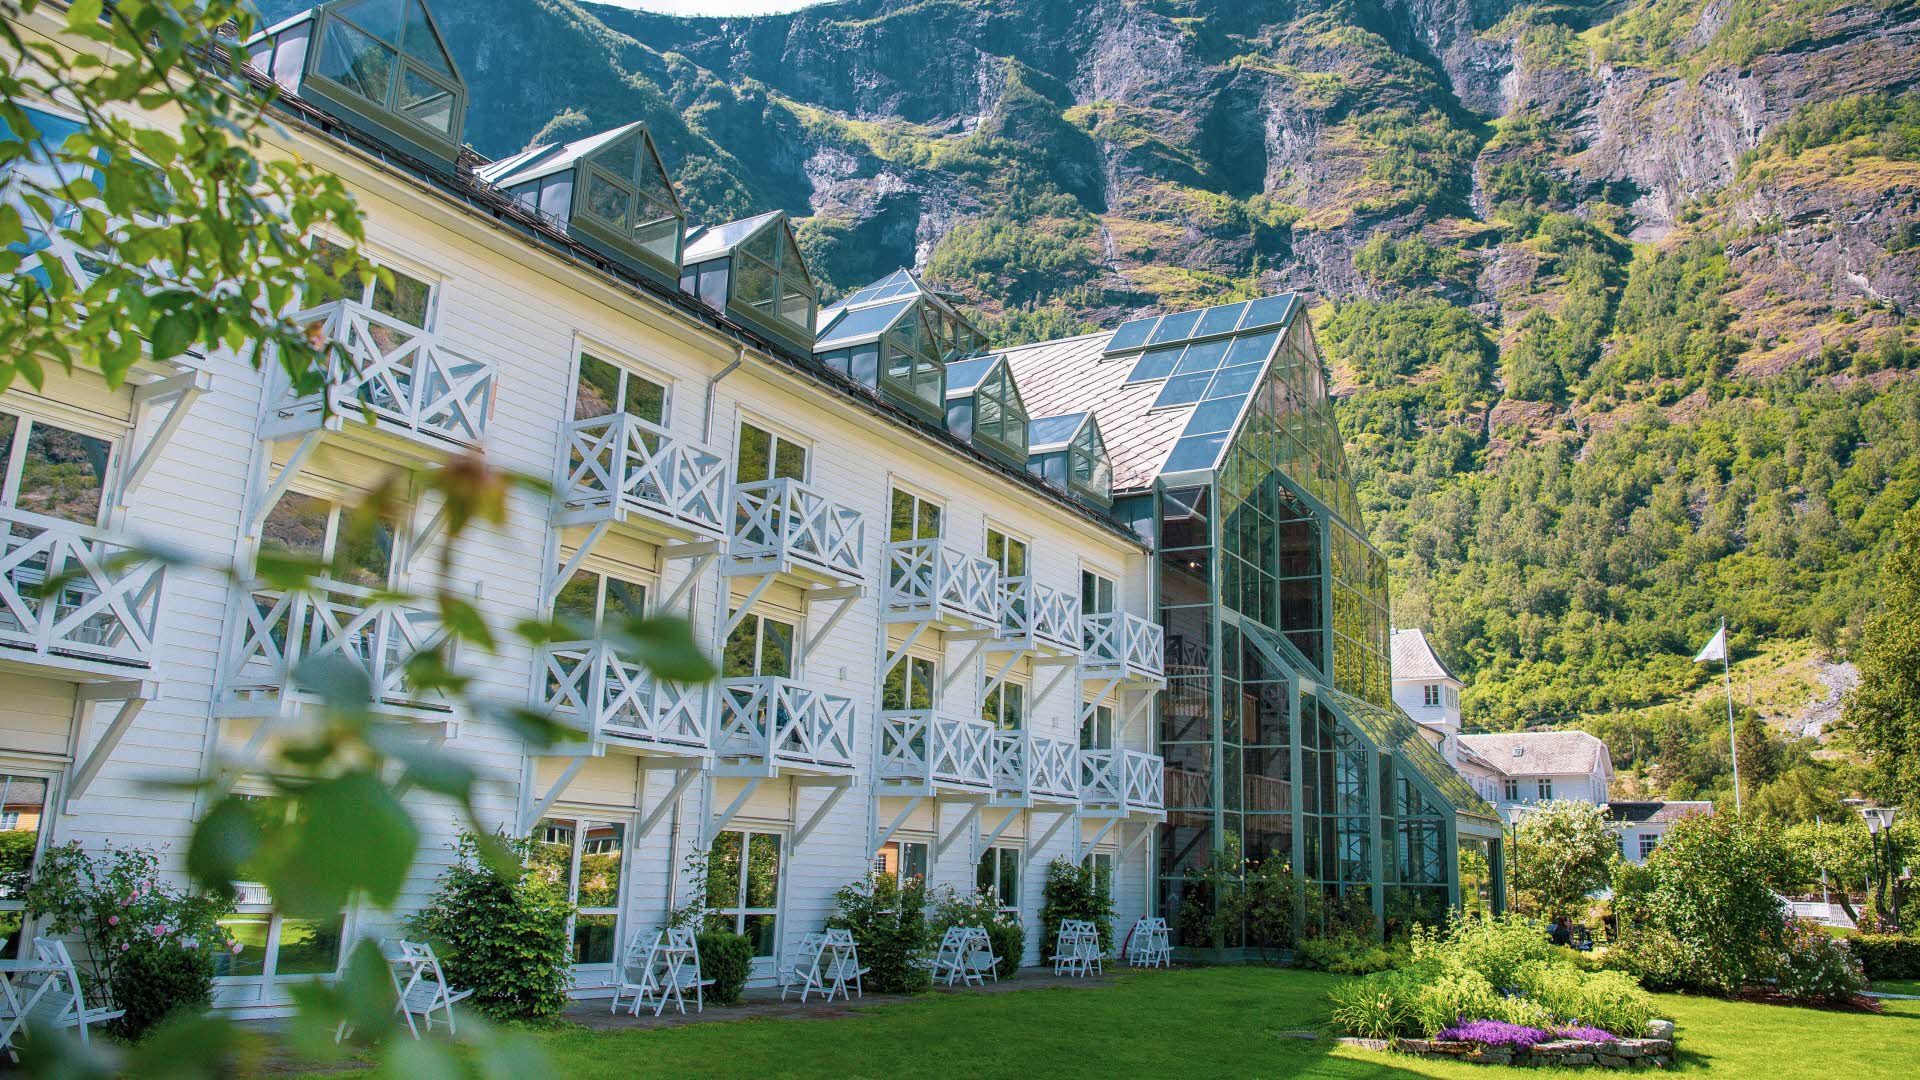 Fretheim Hotel sett fra hagen med grønne blader i front og bratte fjellsider bak. 